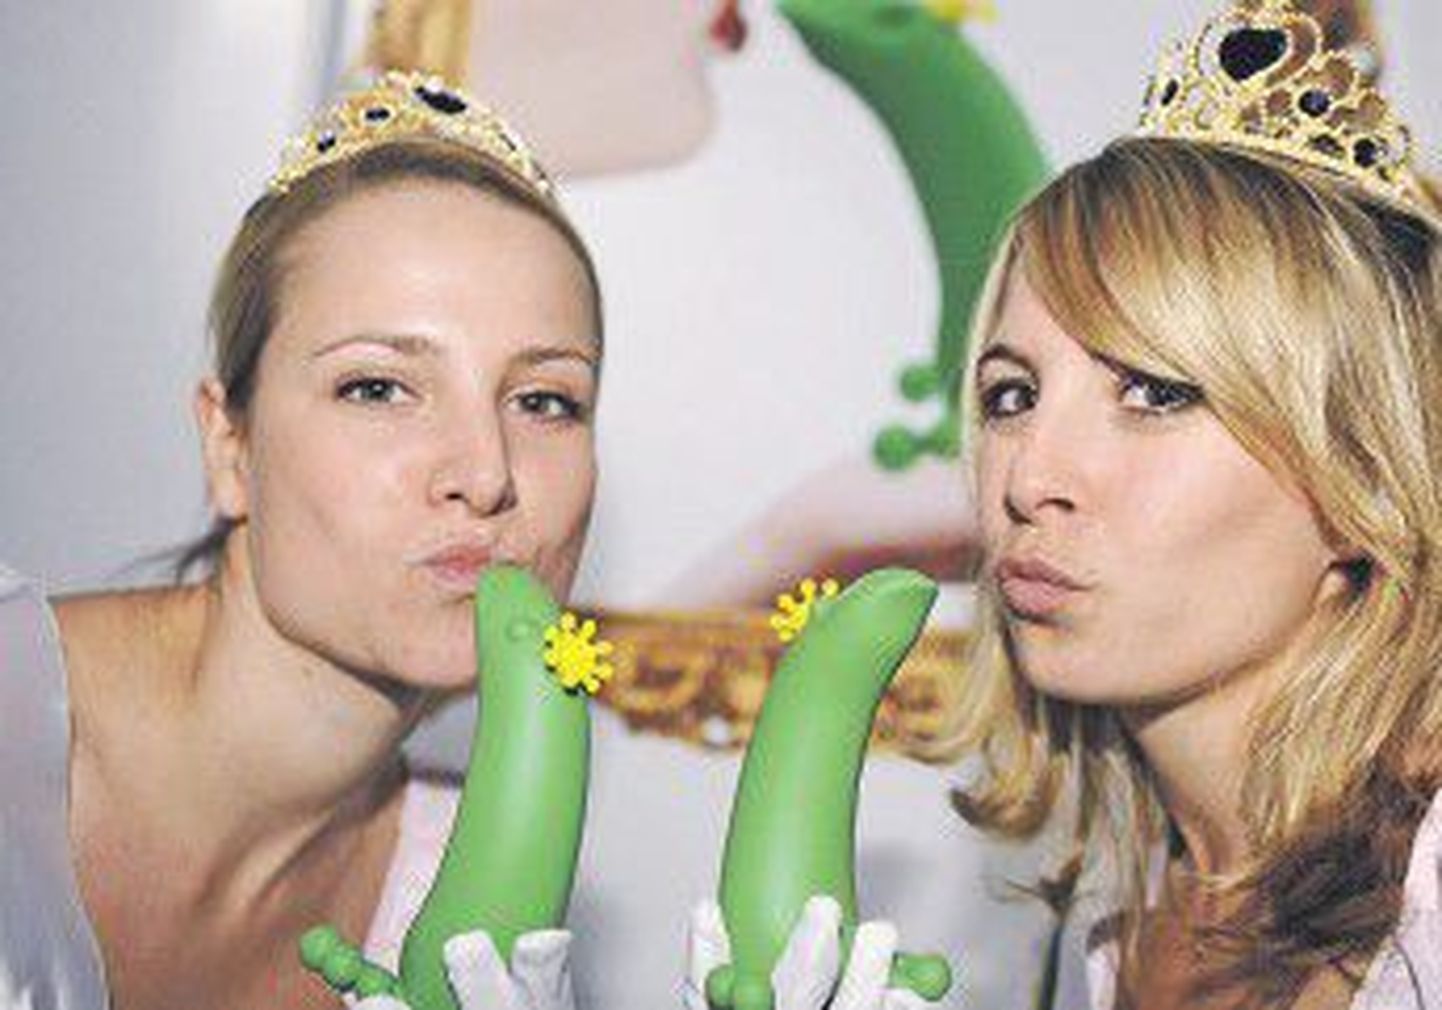 15 октября в Берлине прошла ярмарка эротики Venus, на которой модели Саския и Анна продемонстрировали новые секс-товары для взрослых.